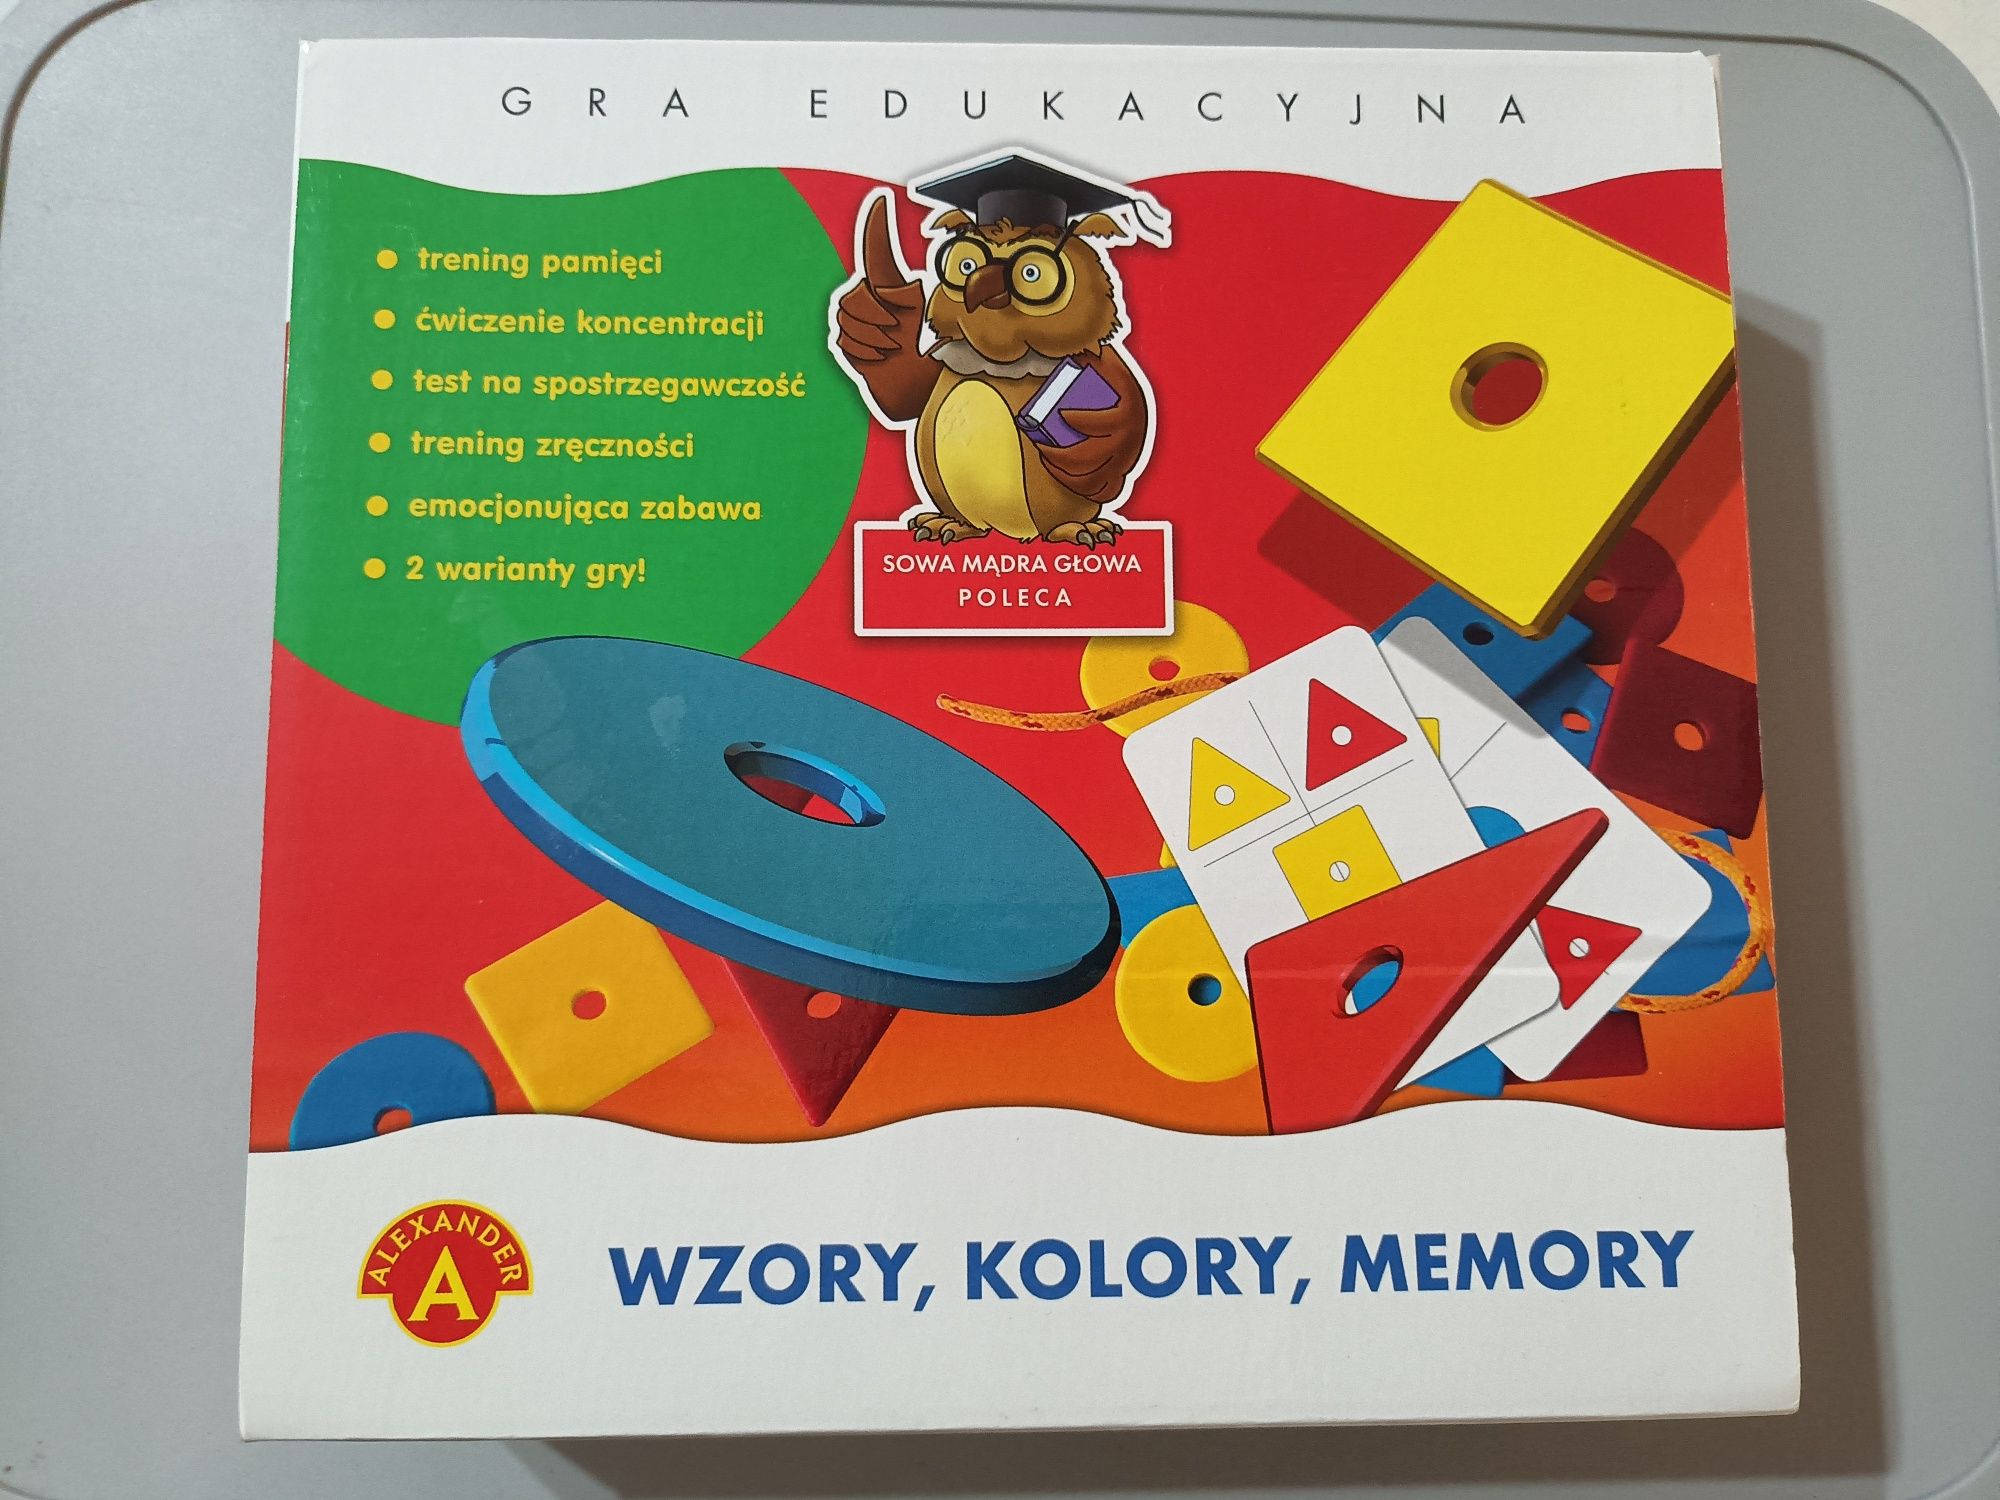 Alexander Gra edukacyjna wzory kolory memory pamięć logiczna